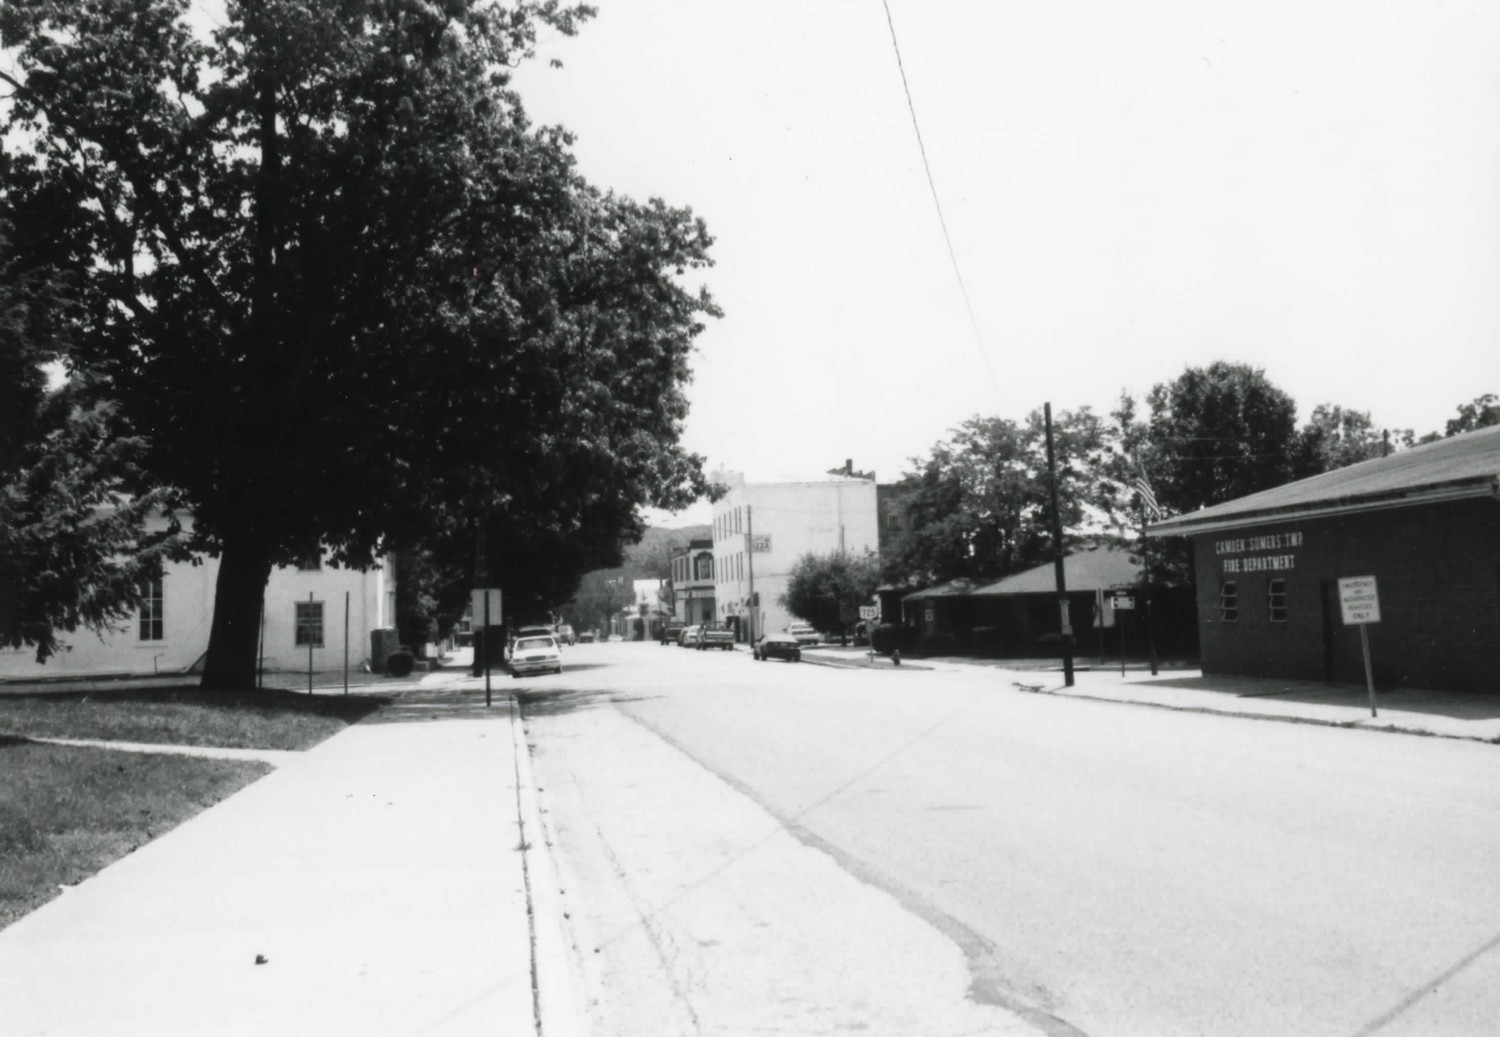 Camden Public School, Camden Ohio West side of site facing east (1997)